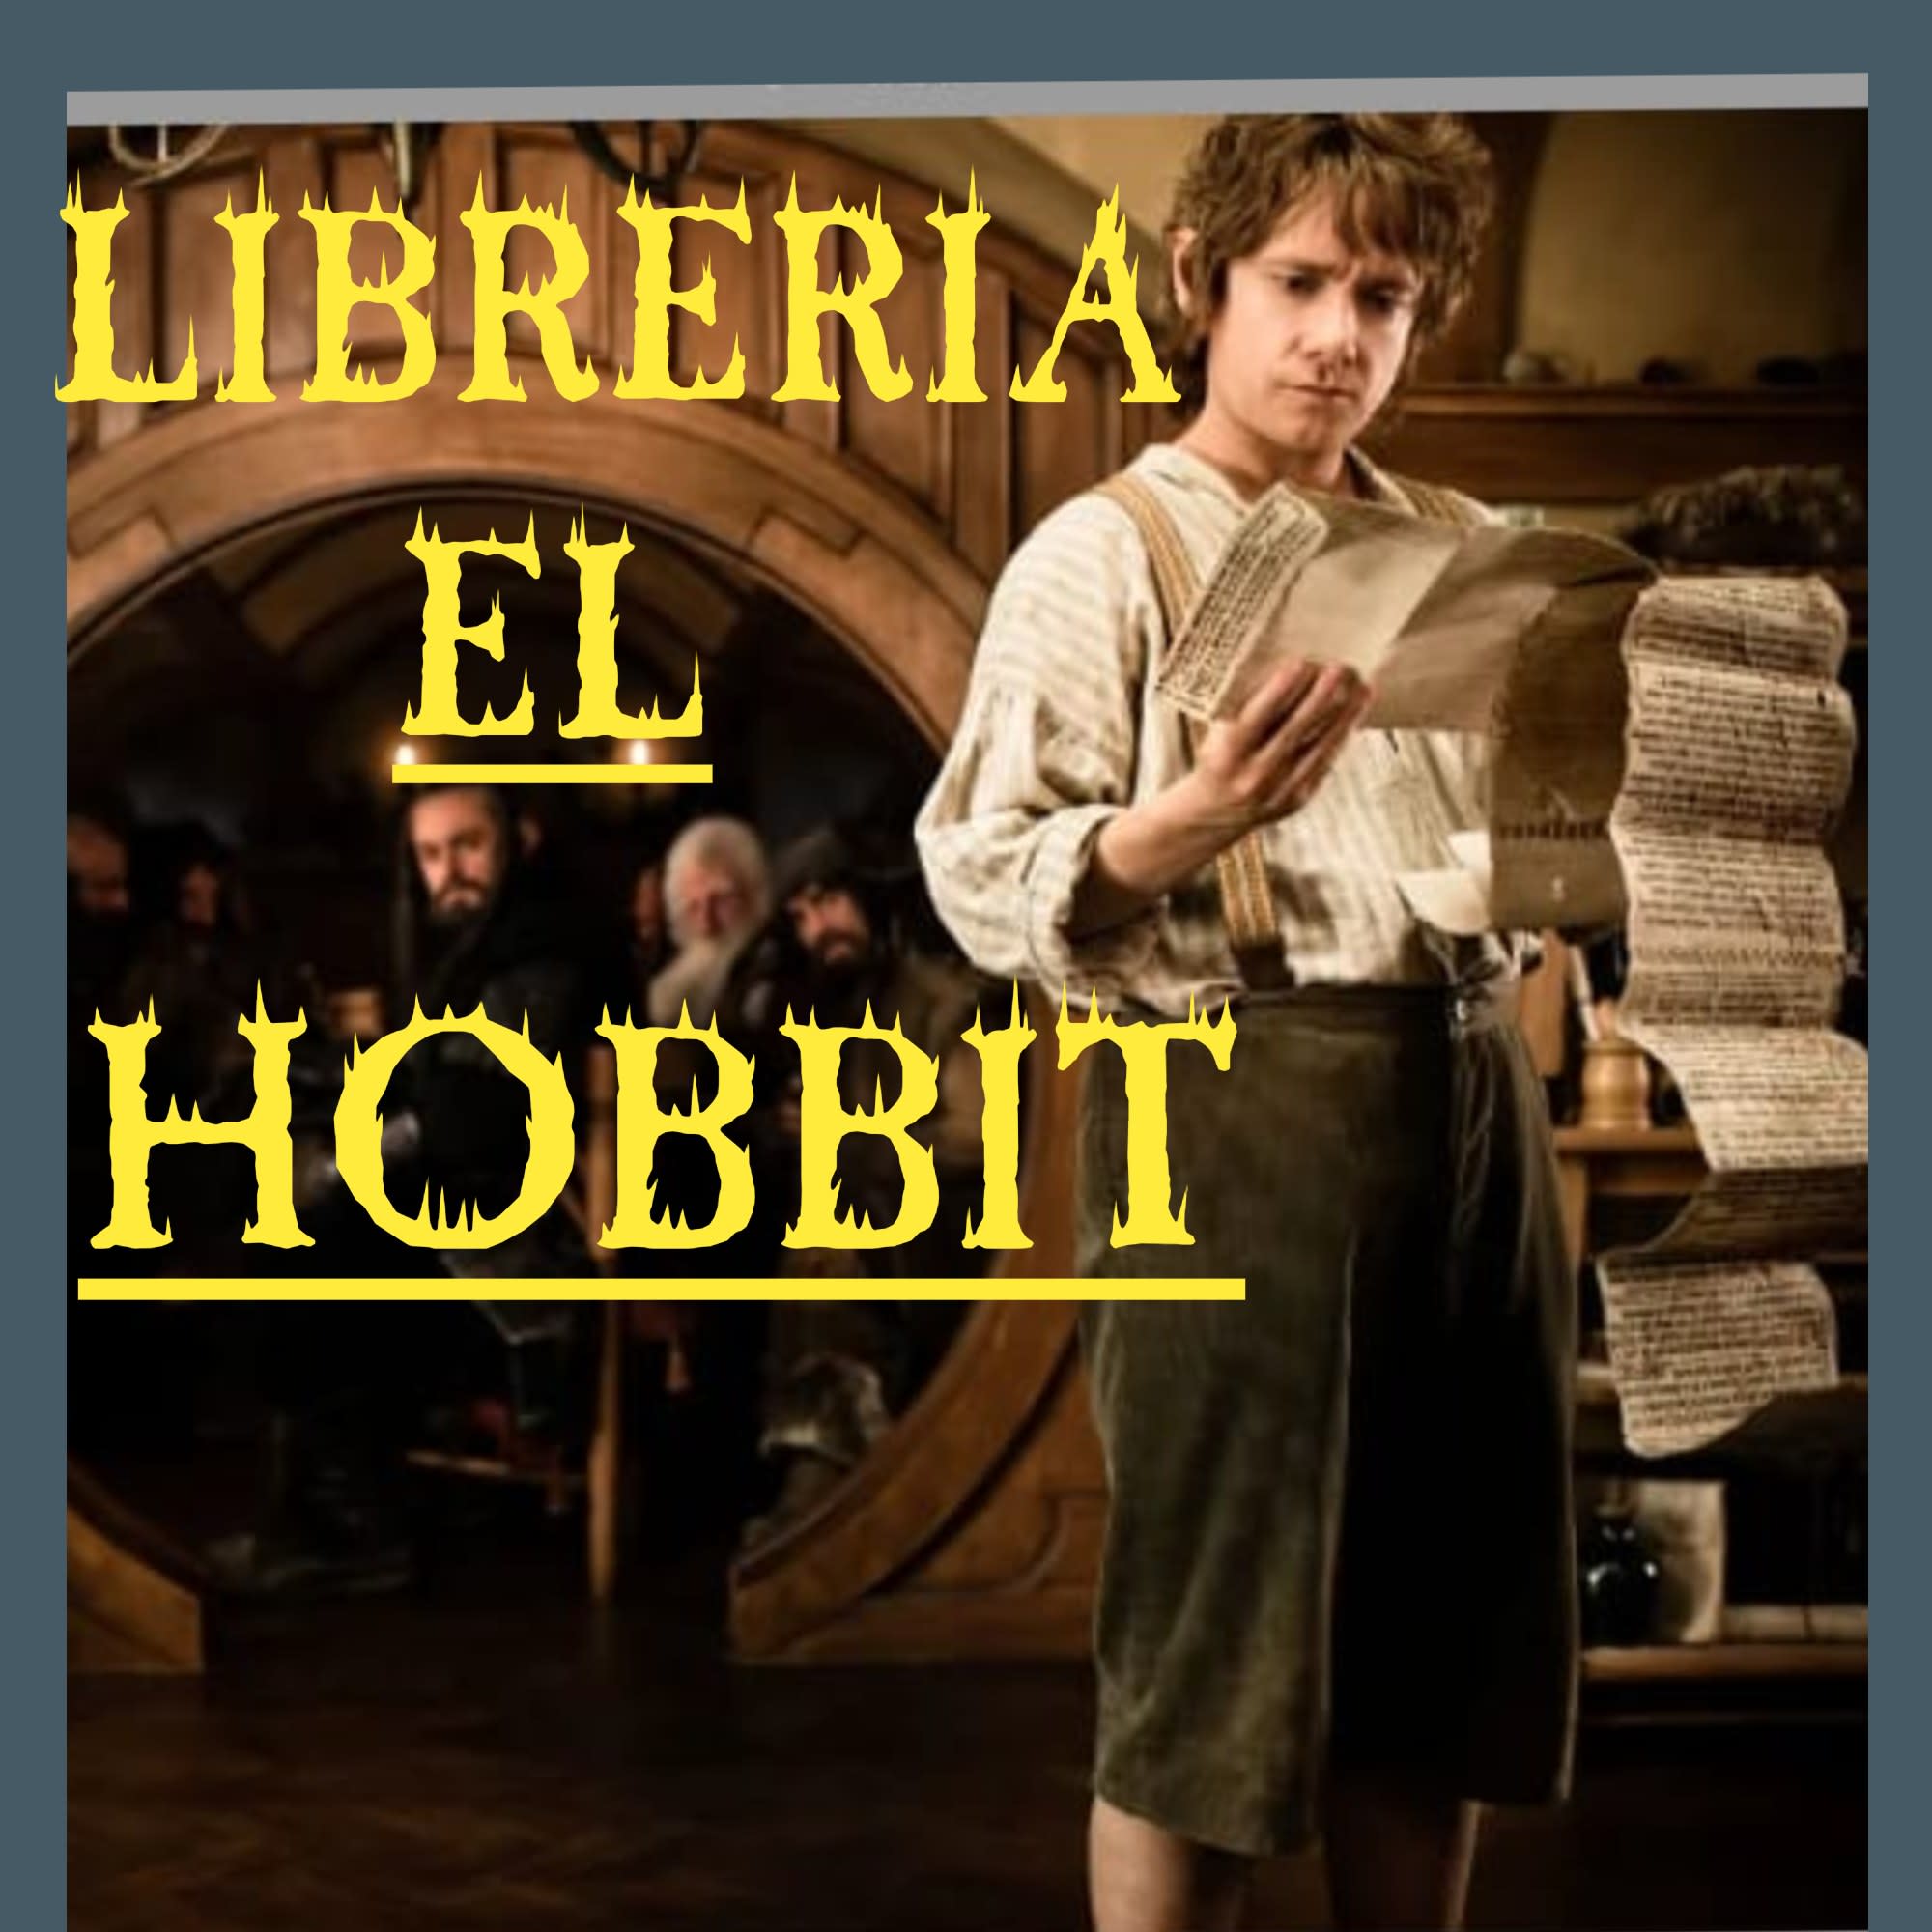 Libreria El Hobbit